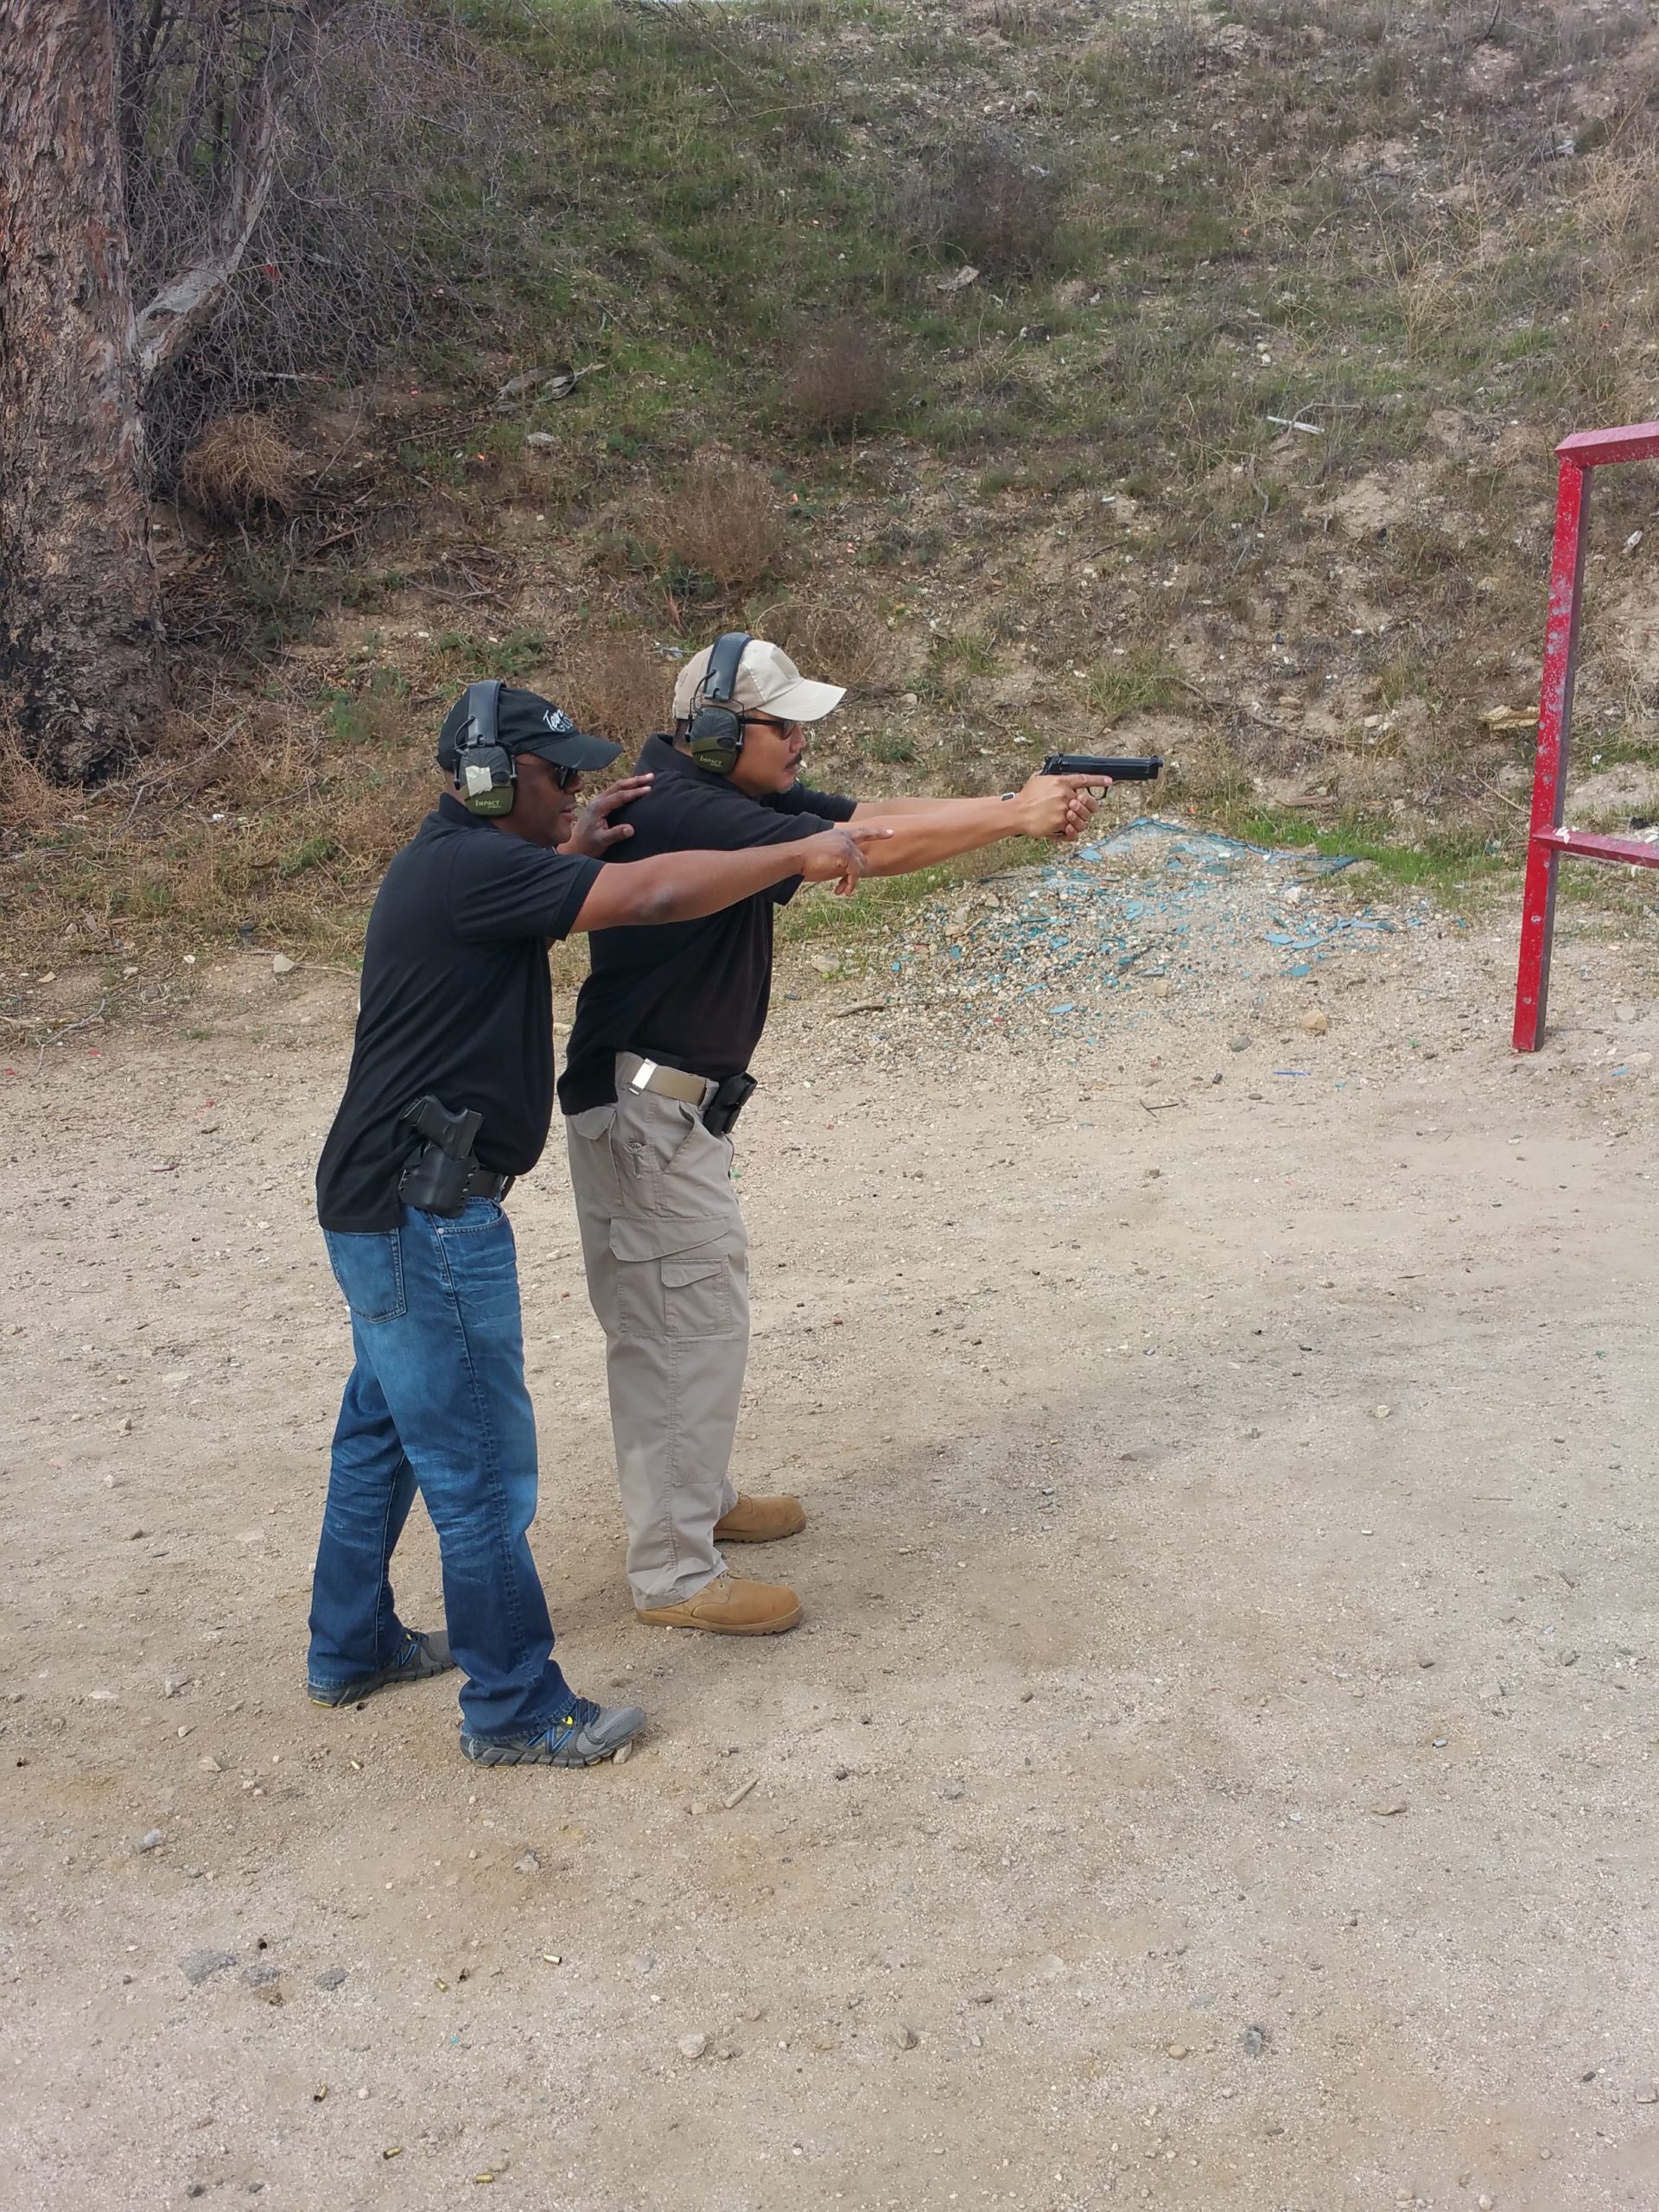 Two men training at range